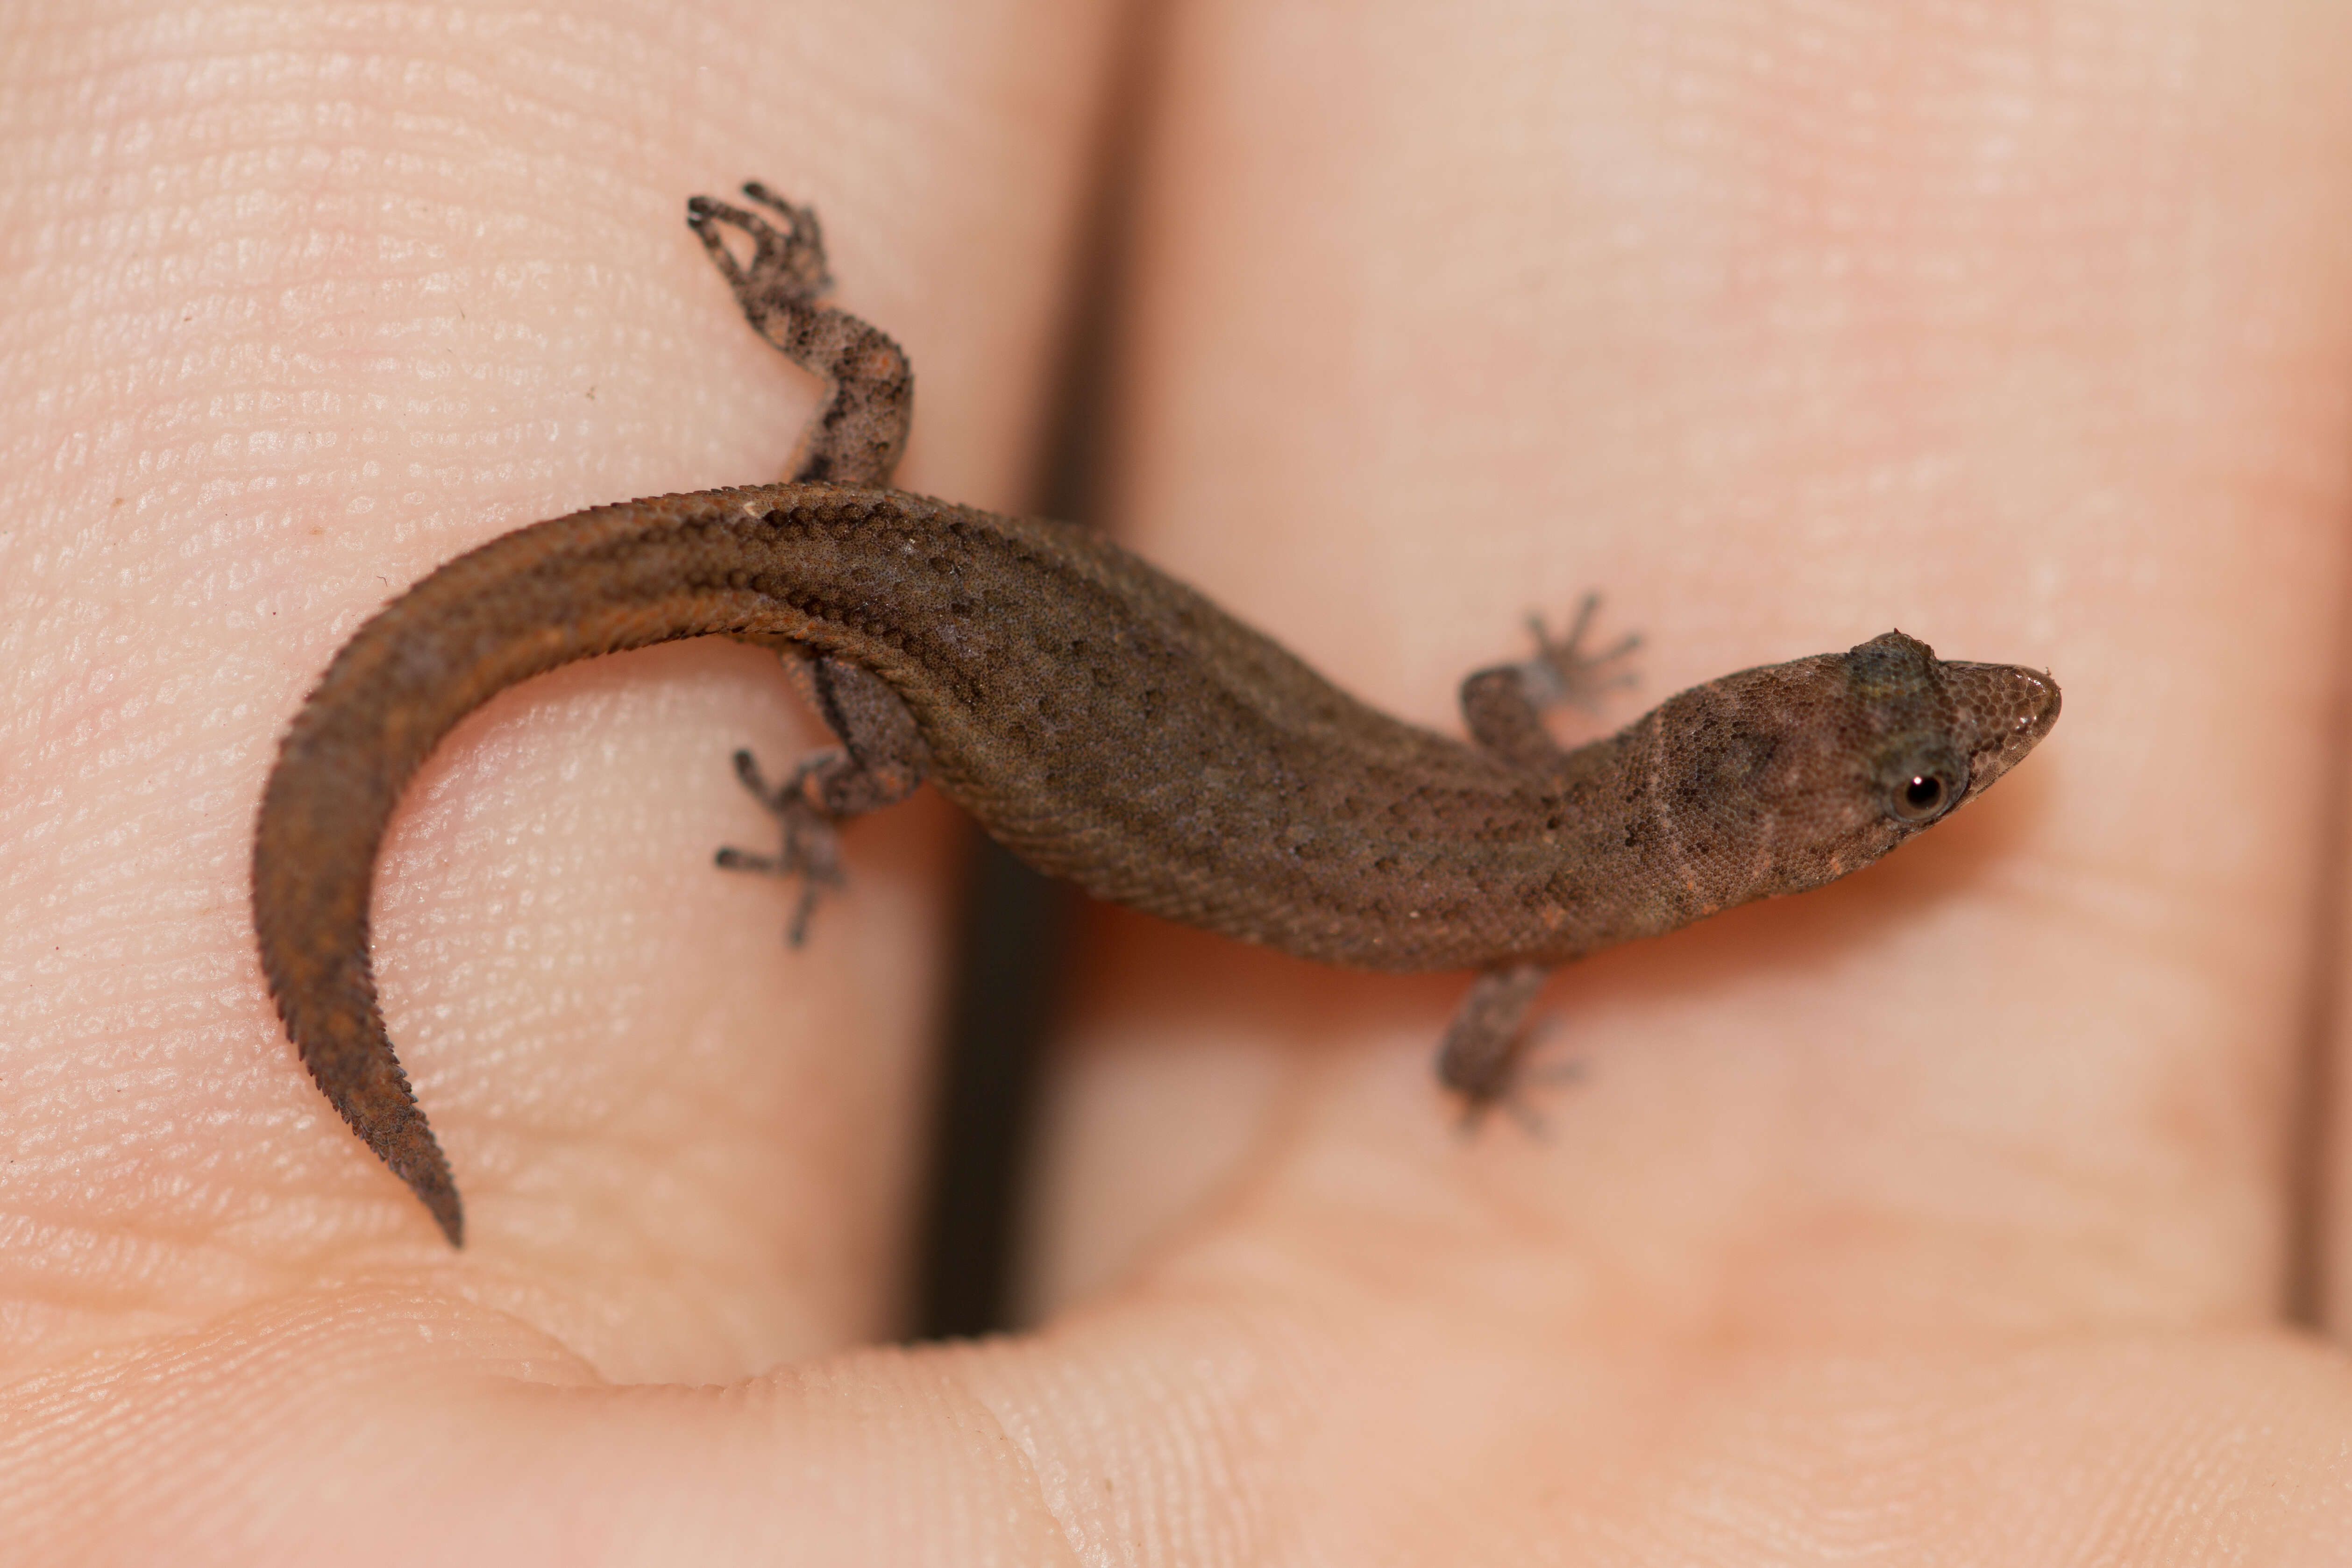 Image of Dwarf gecko